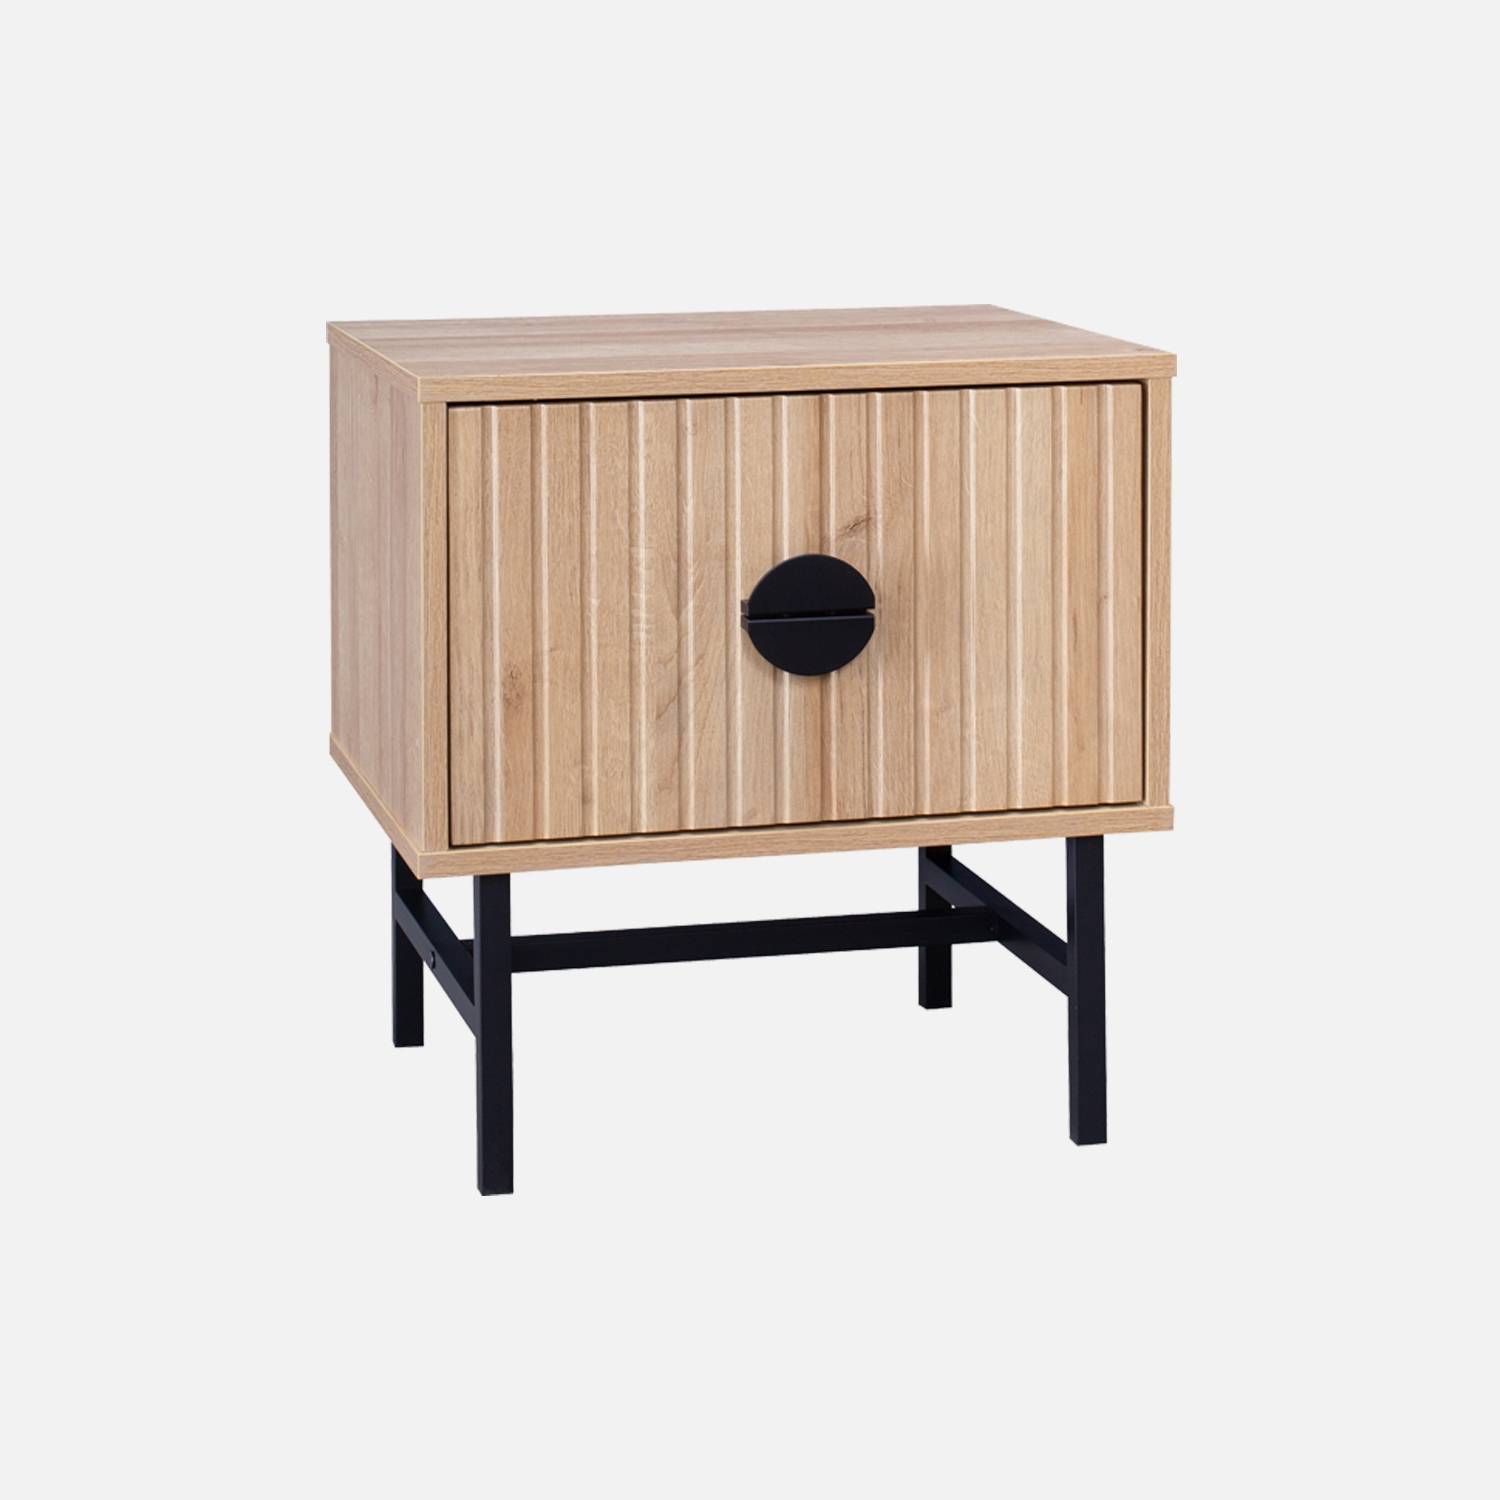 Oak-effect bedside table, grooved wood decor | sweeek